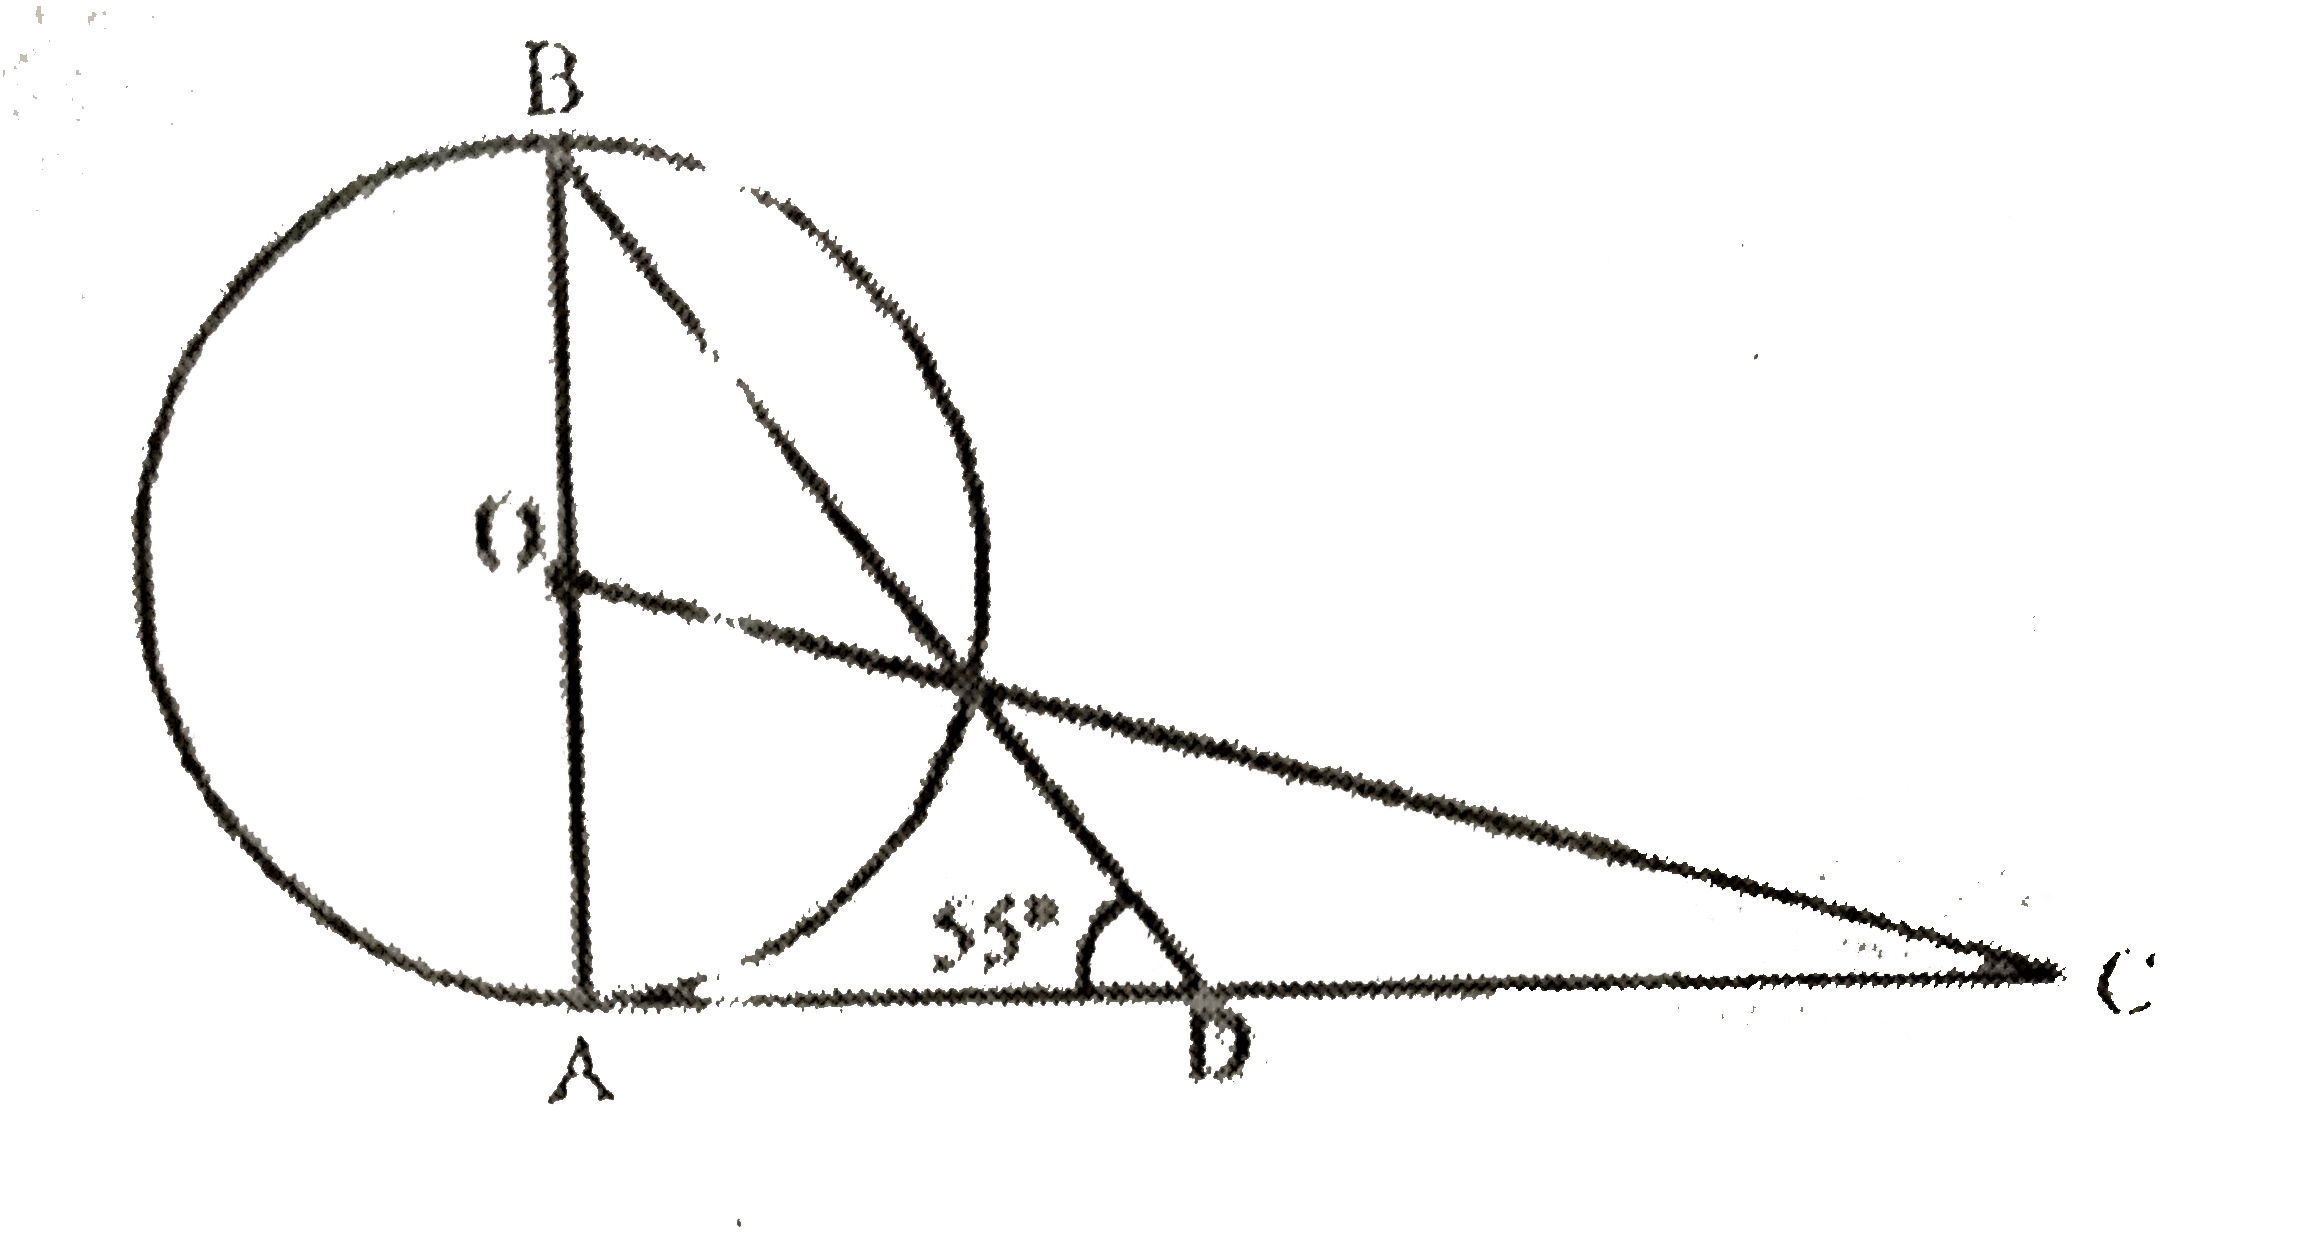 चित्र में, वृत्त का केन्द्र O है और AC वृत्त की स्पर्श रेखा है। यदि angleADB=55^(@),